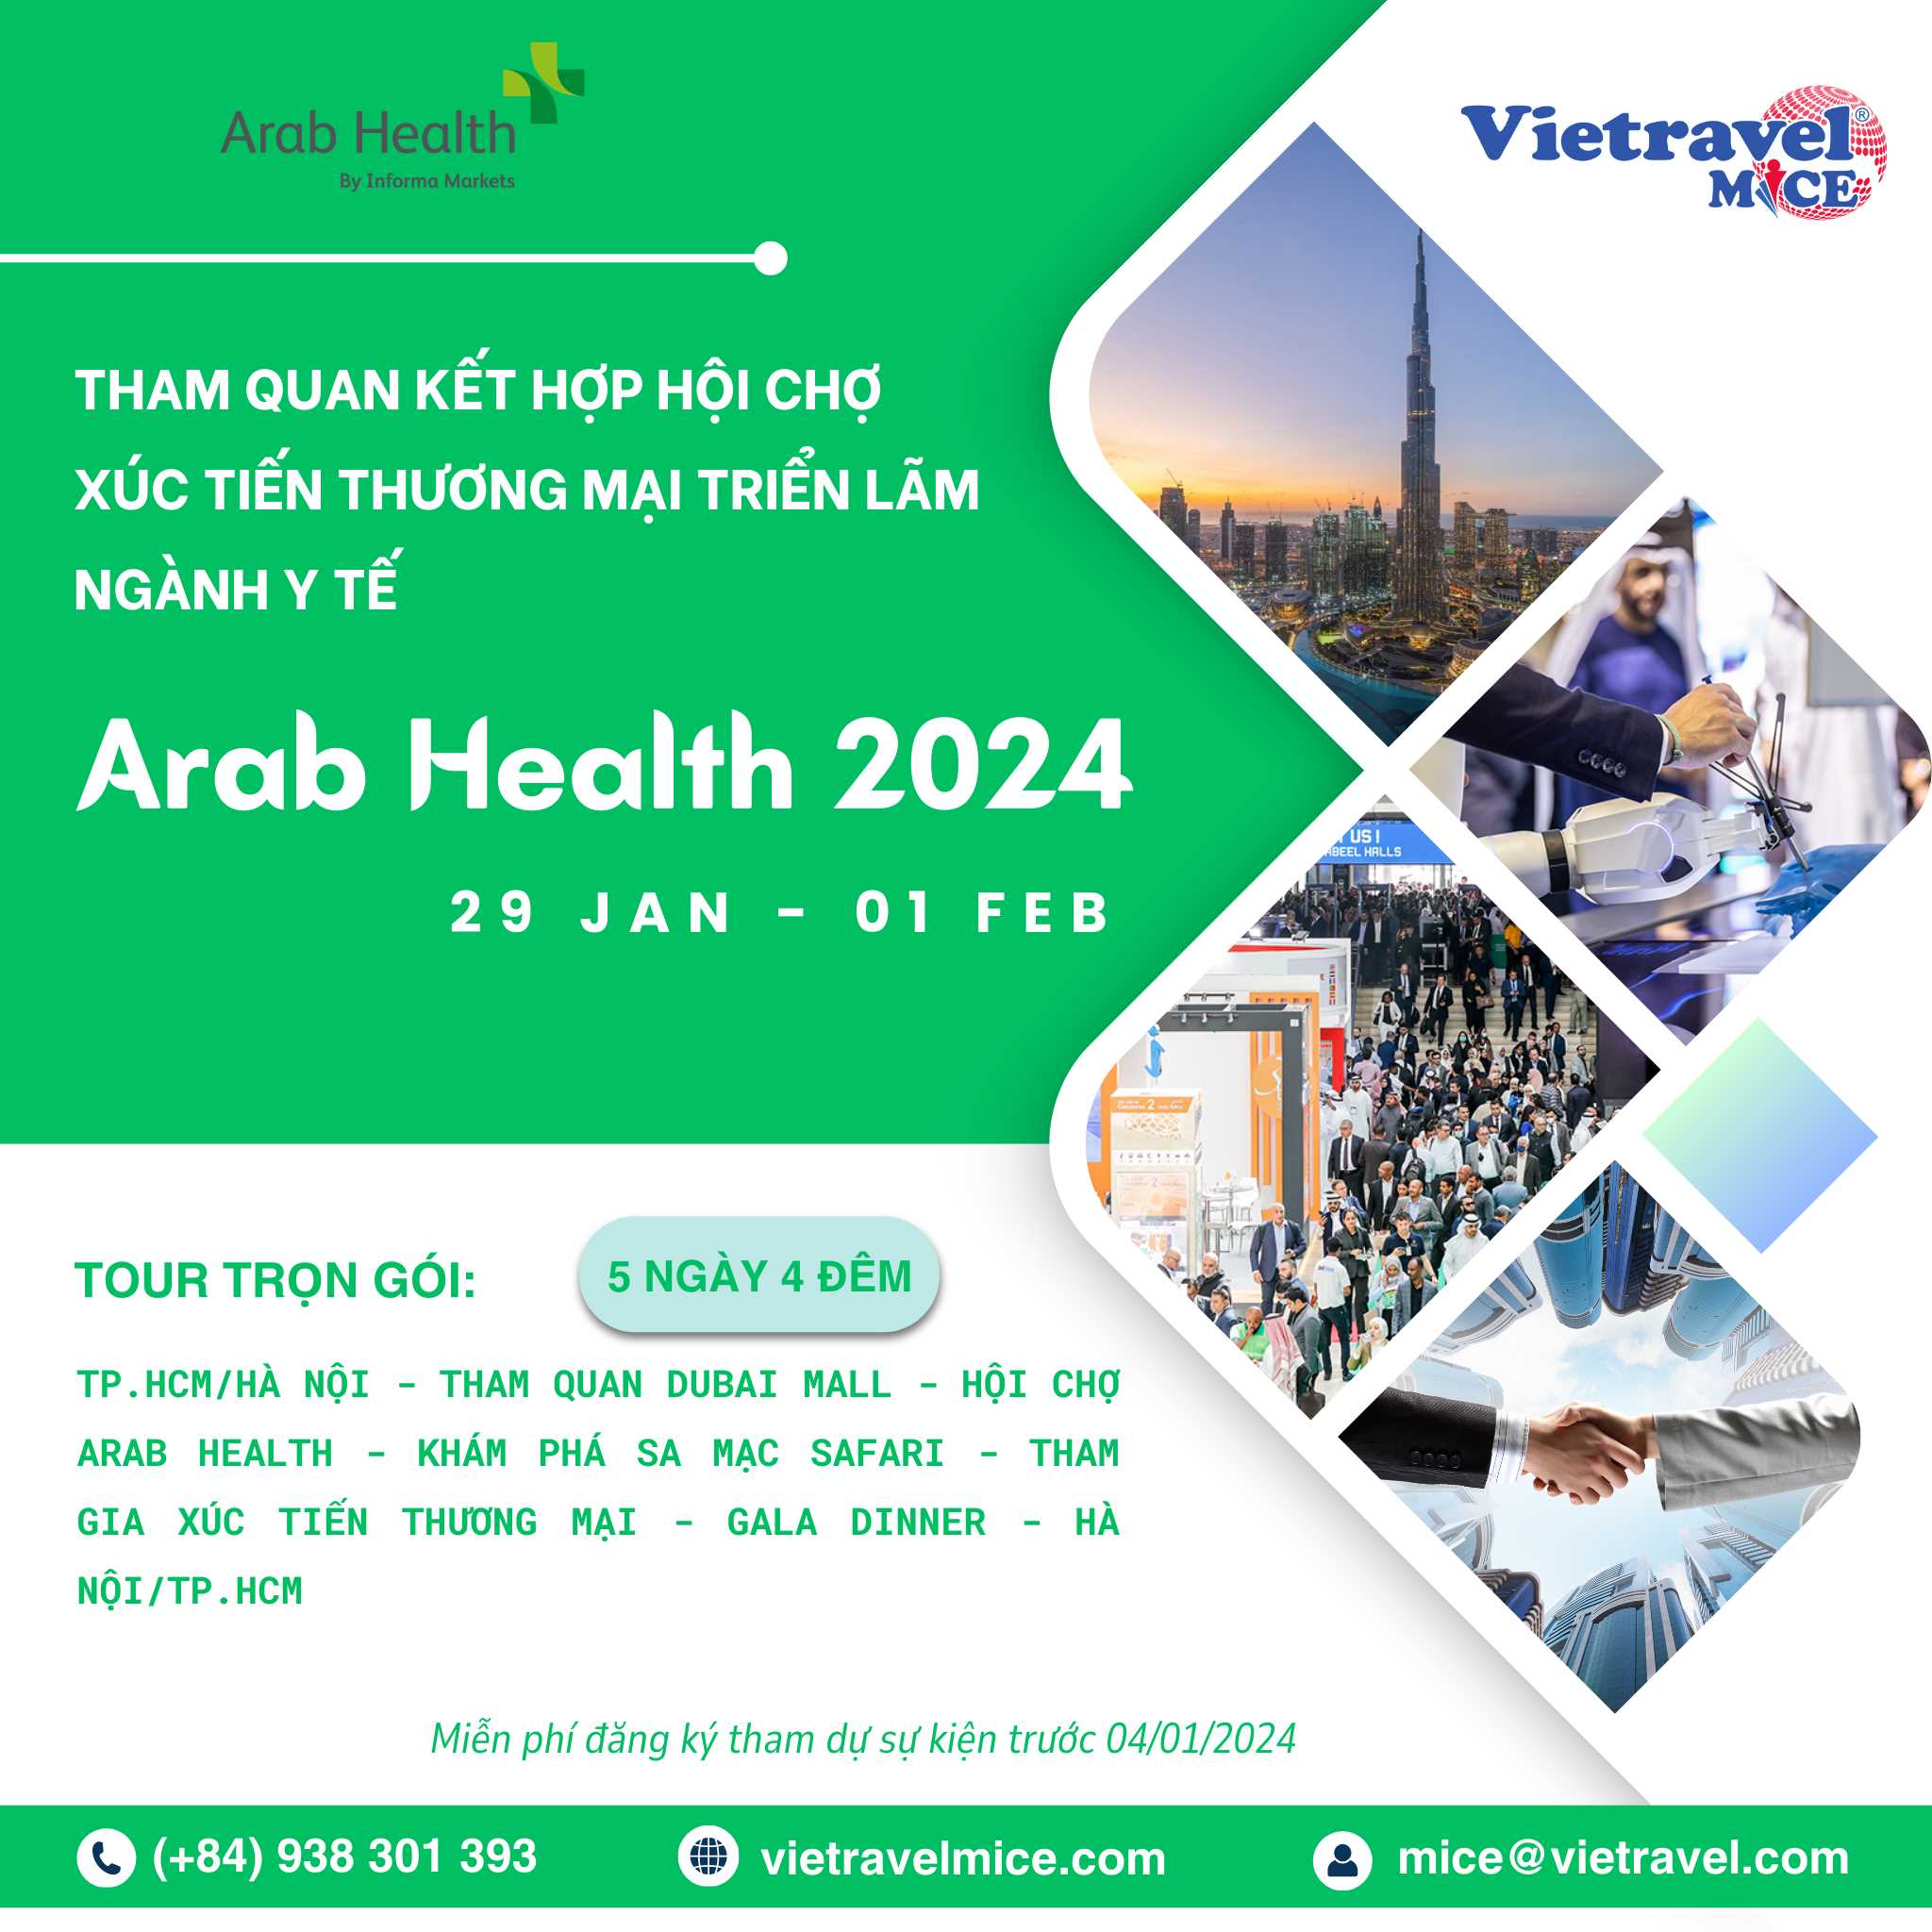 Độc đáo trải nghiệm Dubai, tham gia Hội chợ Y tế Arab Health 2024